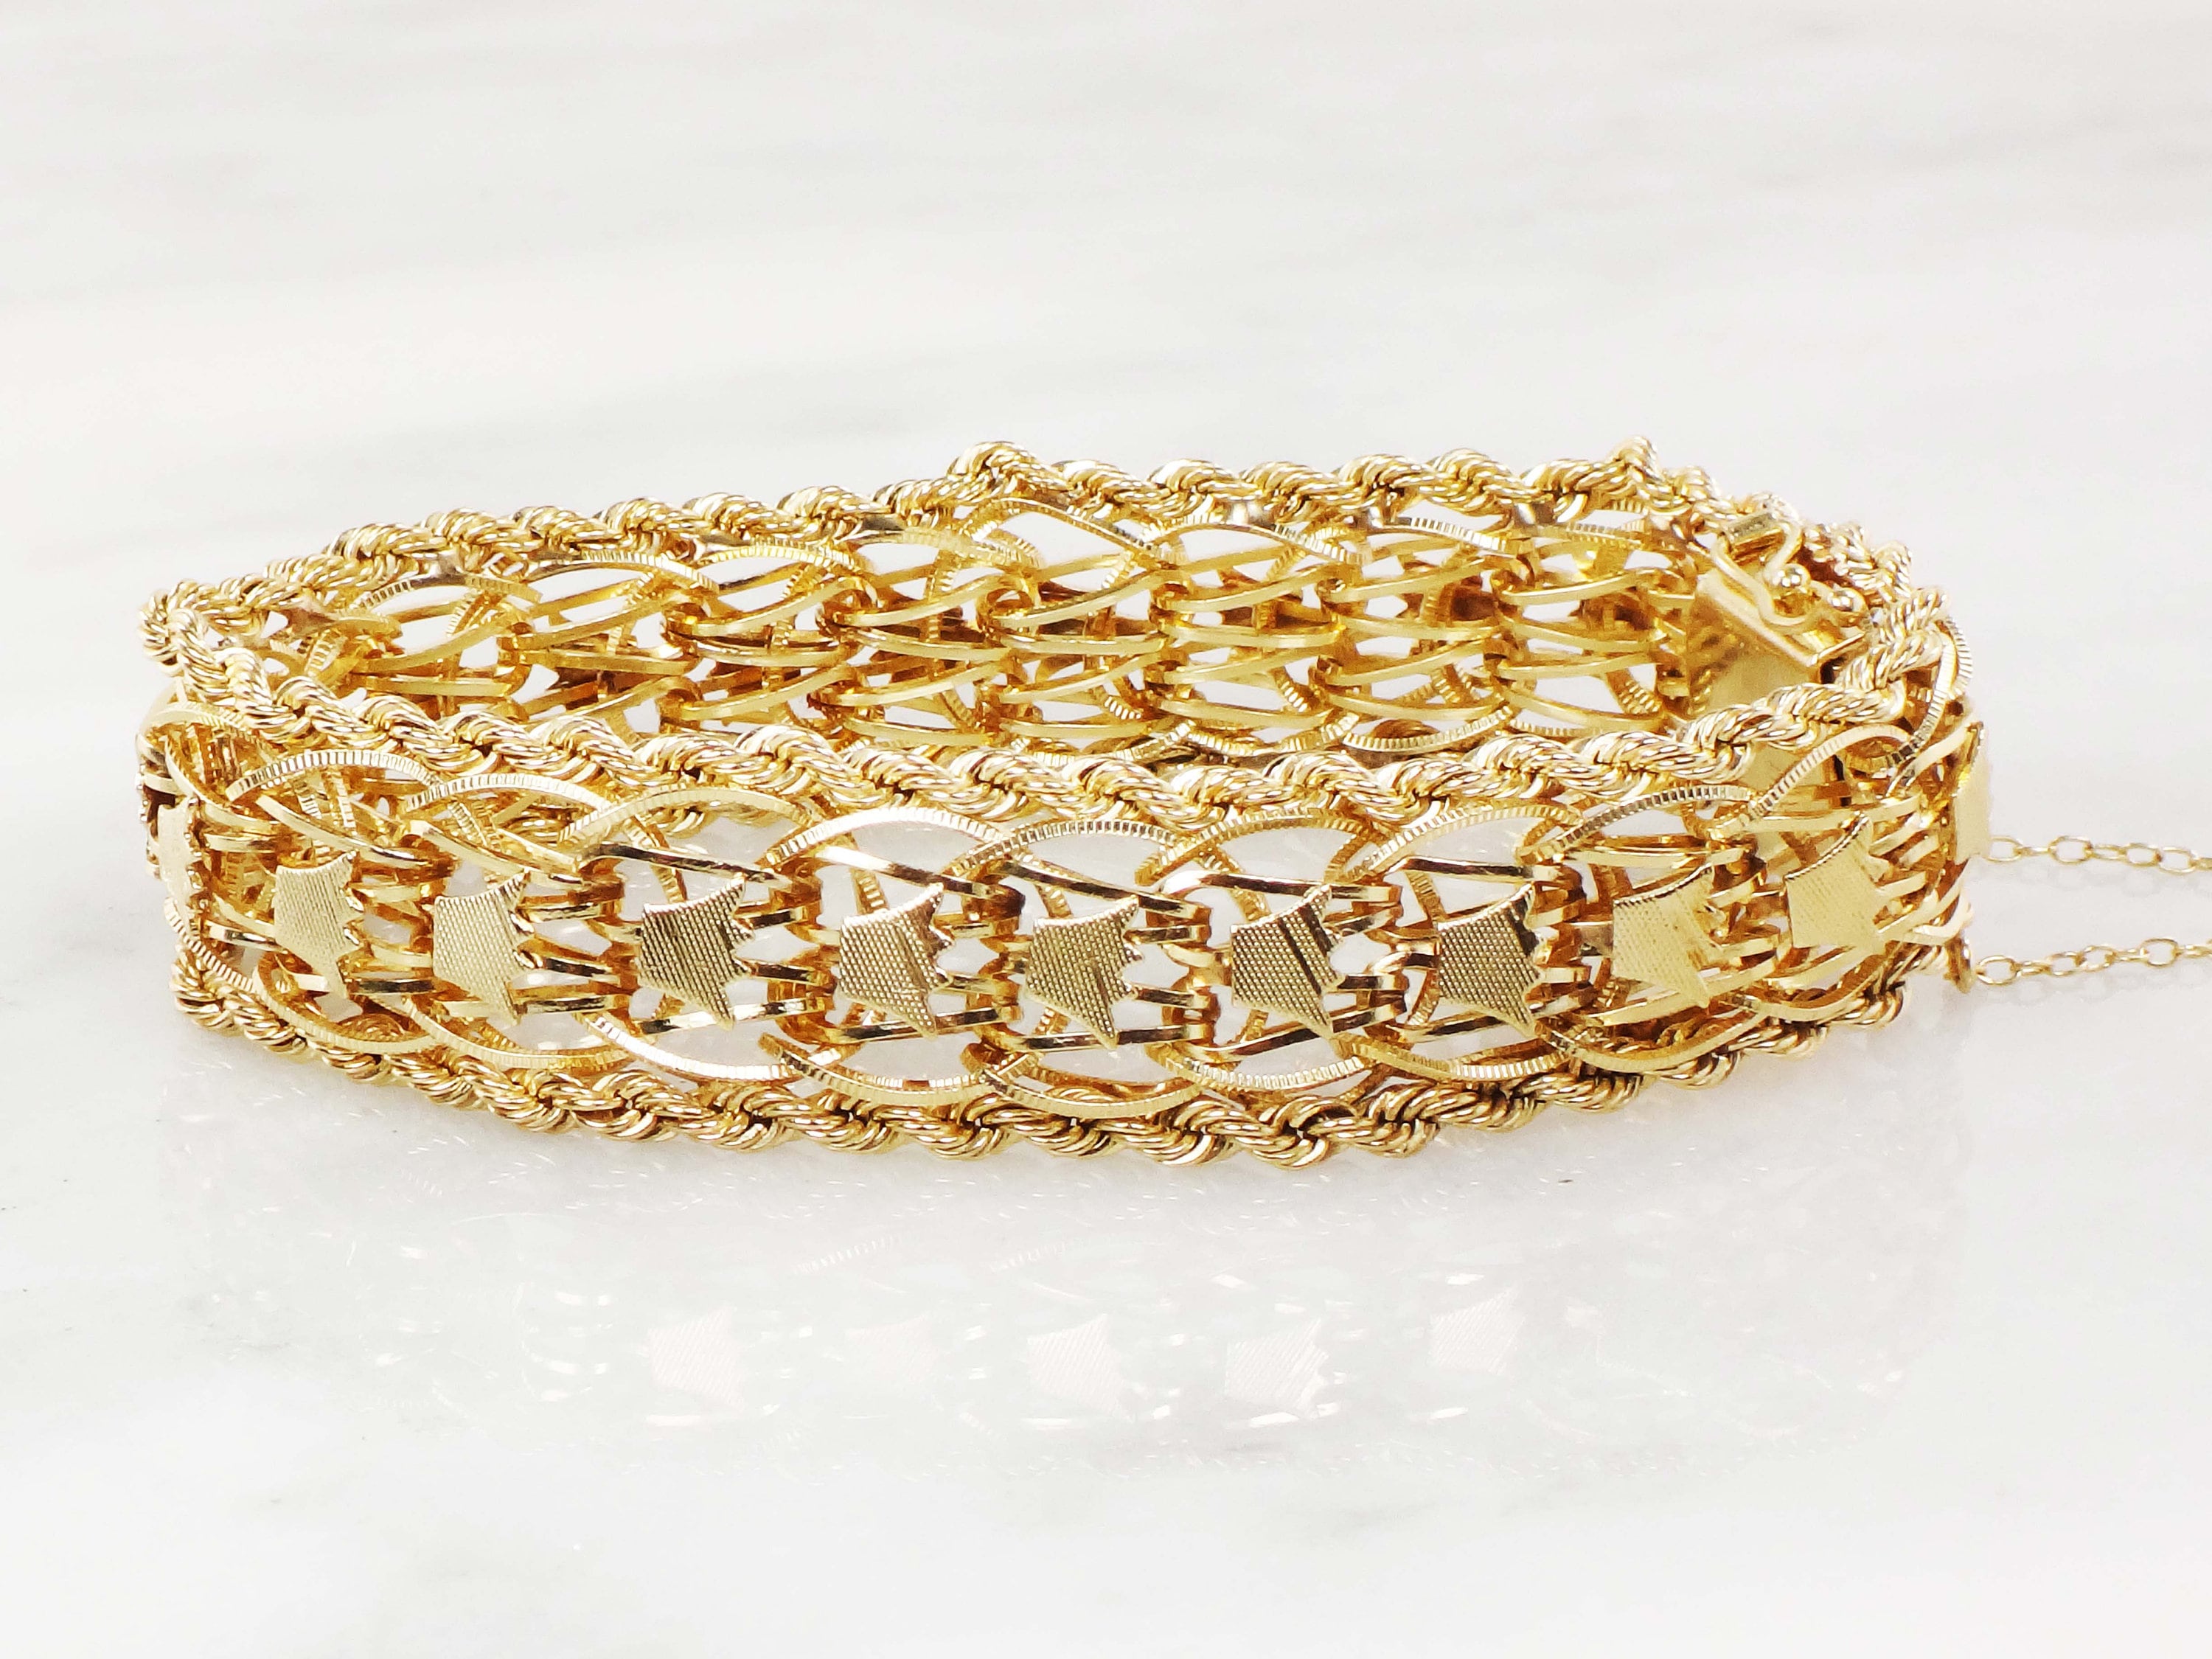 Vintage 14K Gold Charm Bracelet sold at auction on 8th September